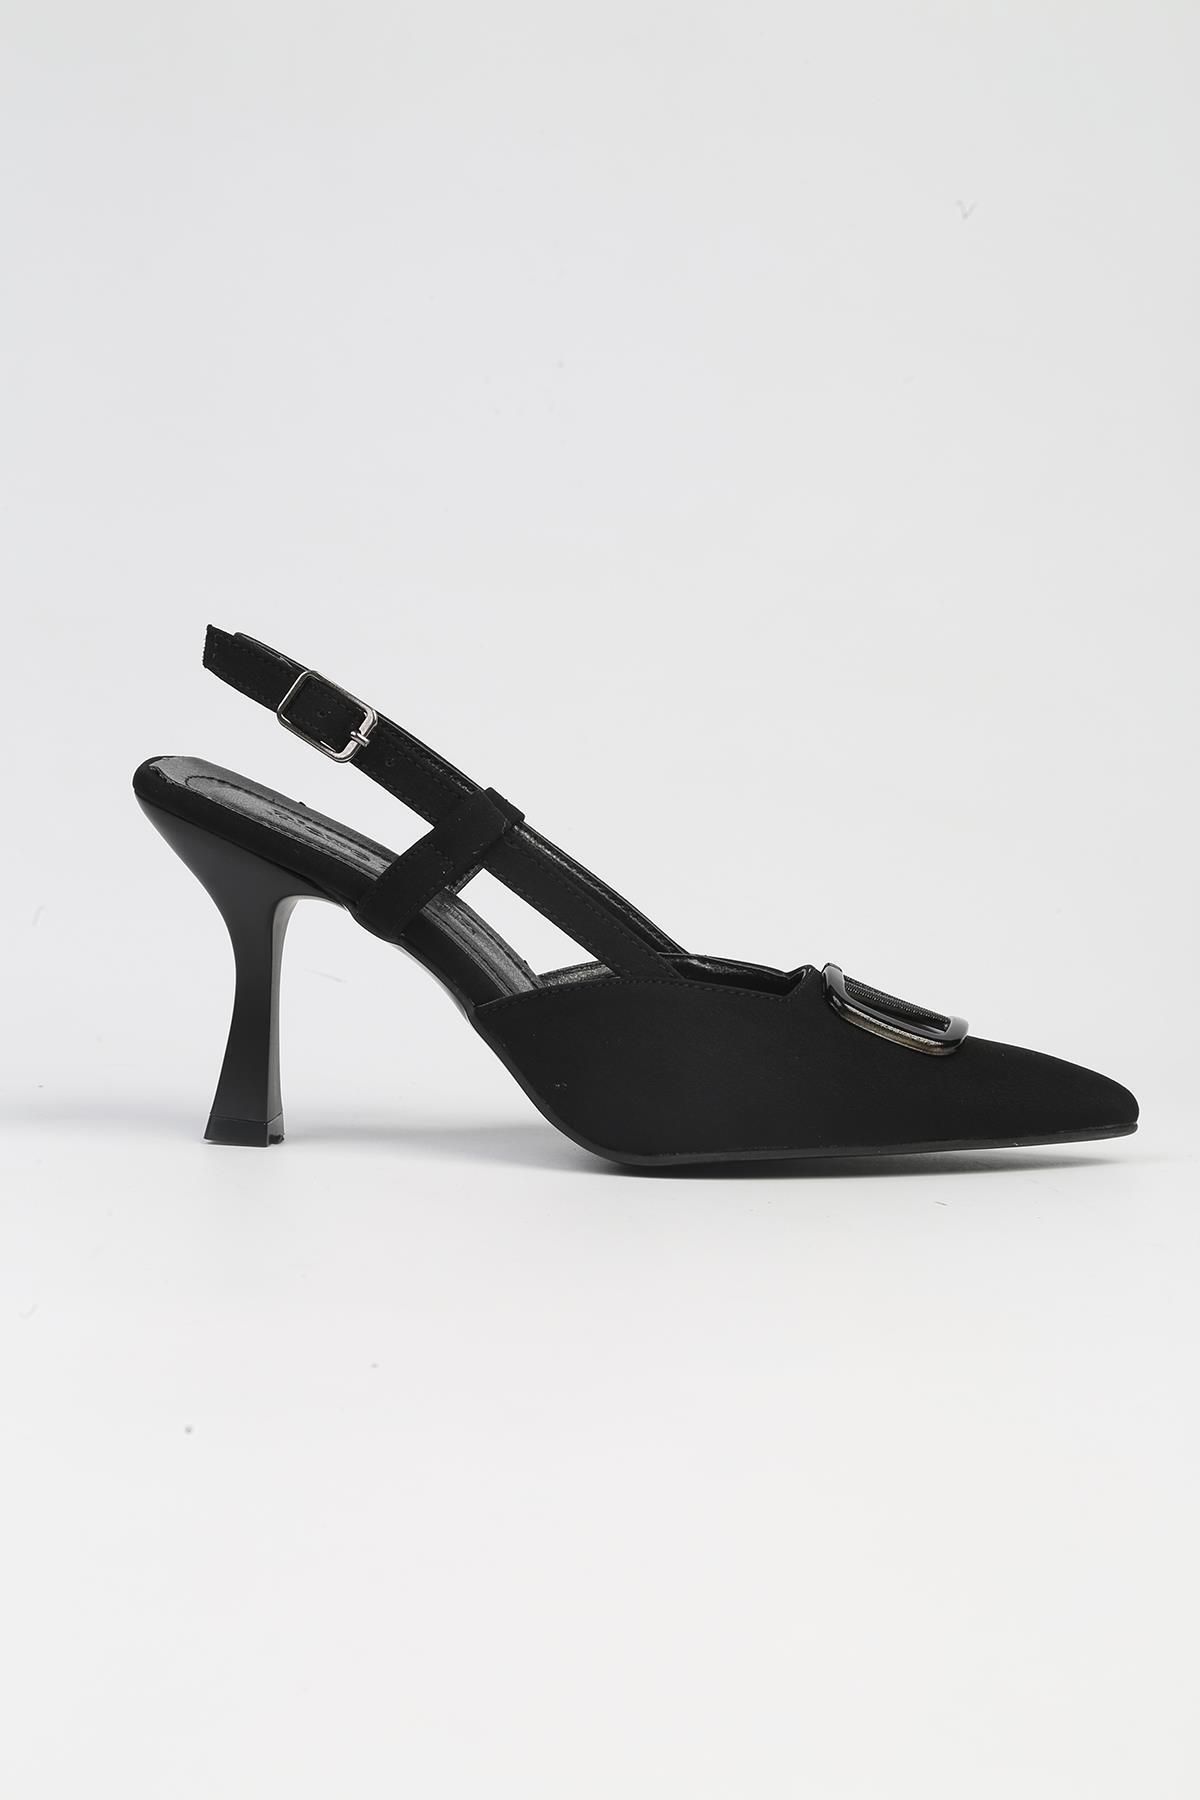 Pierre Cardin ® | PC-53005- 3691 Siyah-Kadın Topuklu Ayakkabı